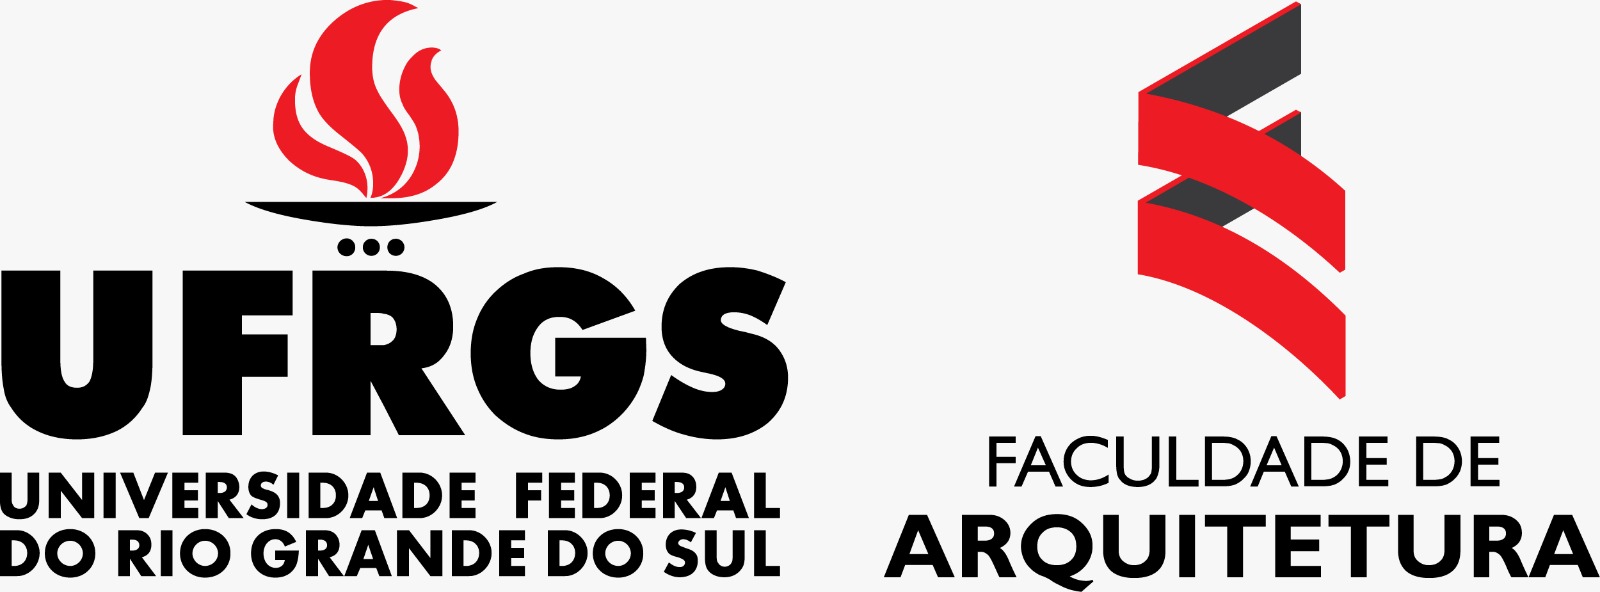 Universidade Federal do Rio Grande do Sul. Faculdade de Arquitetura (Porto Alegre)